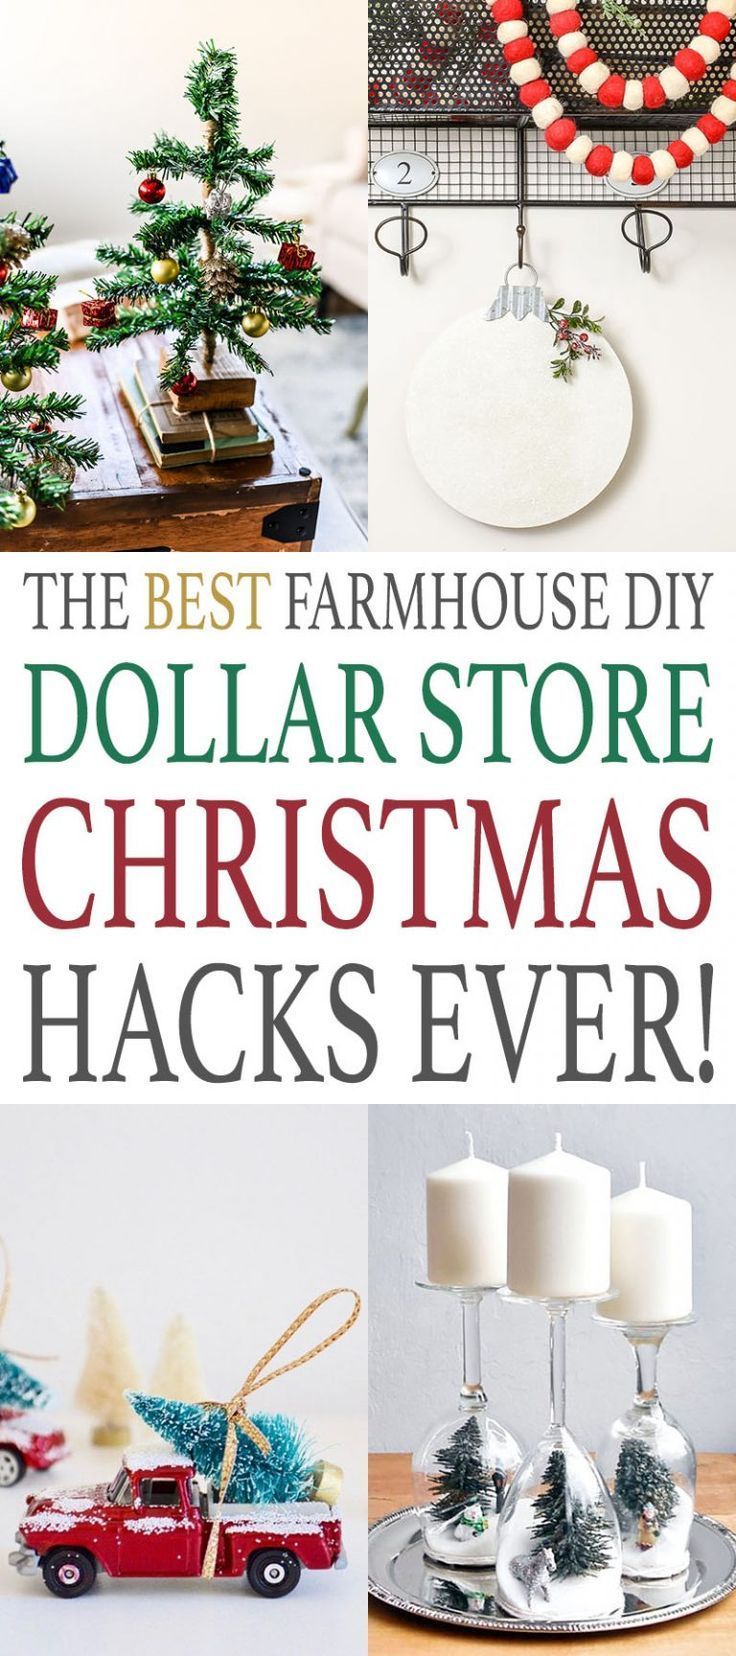 The Best DIY Farmhouse Dollar Store Christmas Hacks Ever | Dollar store christmas, Diy christmas orn -   23 diy christmas decorations dollar store ideas